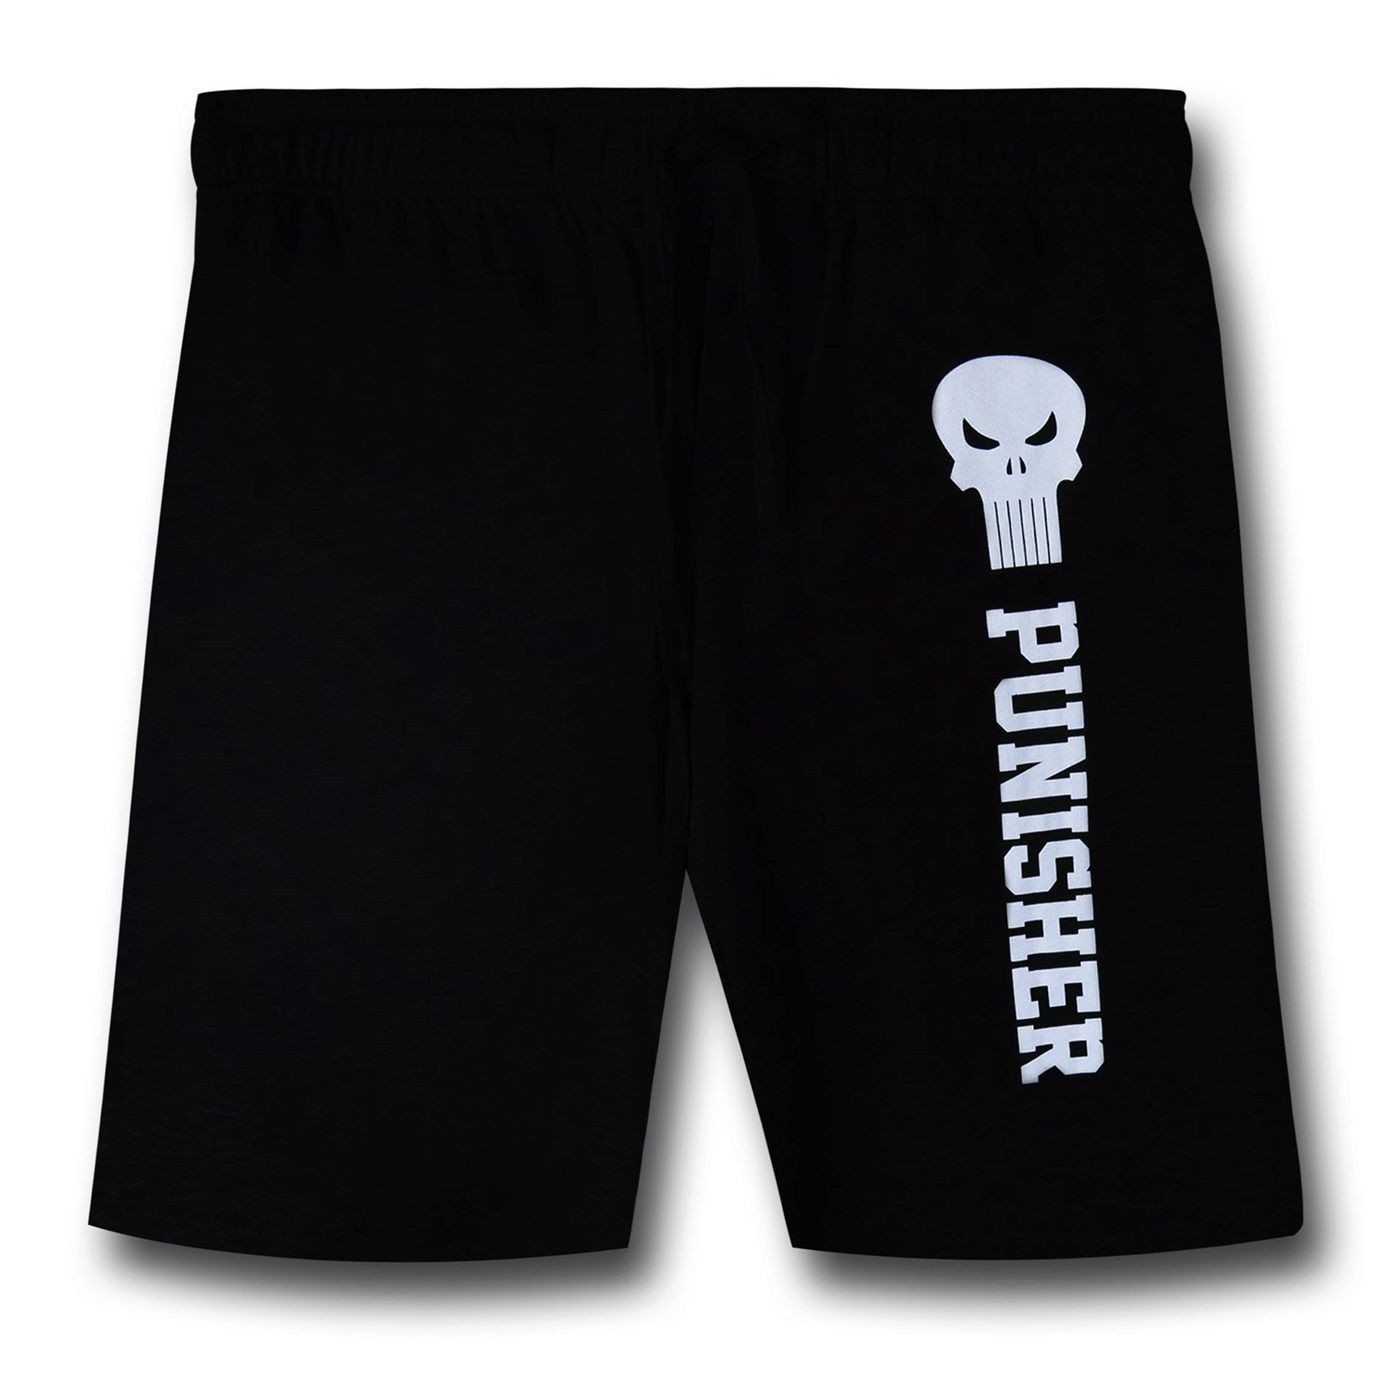 Punisher Symbol & Text Sweat Shorts